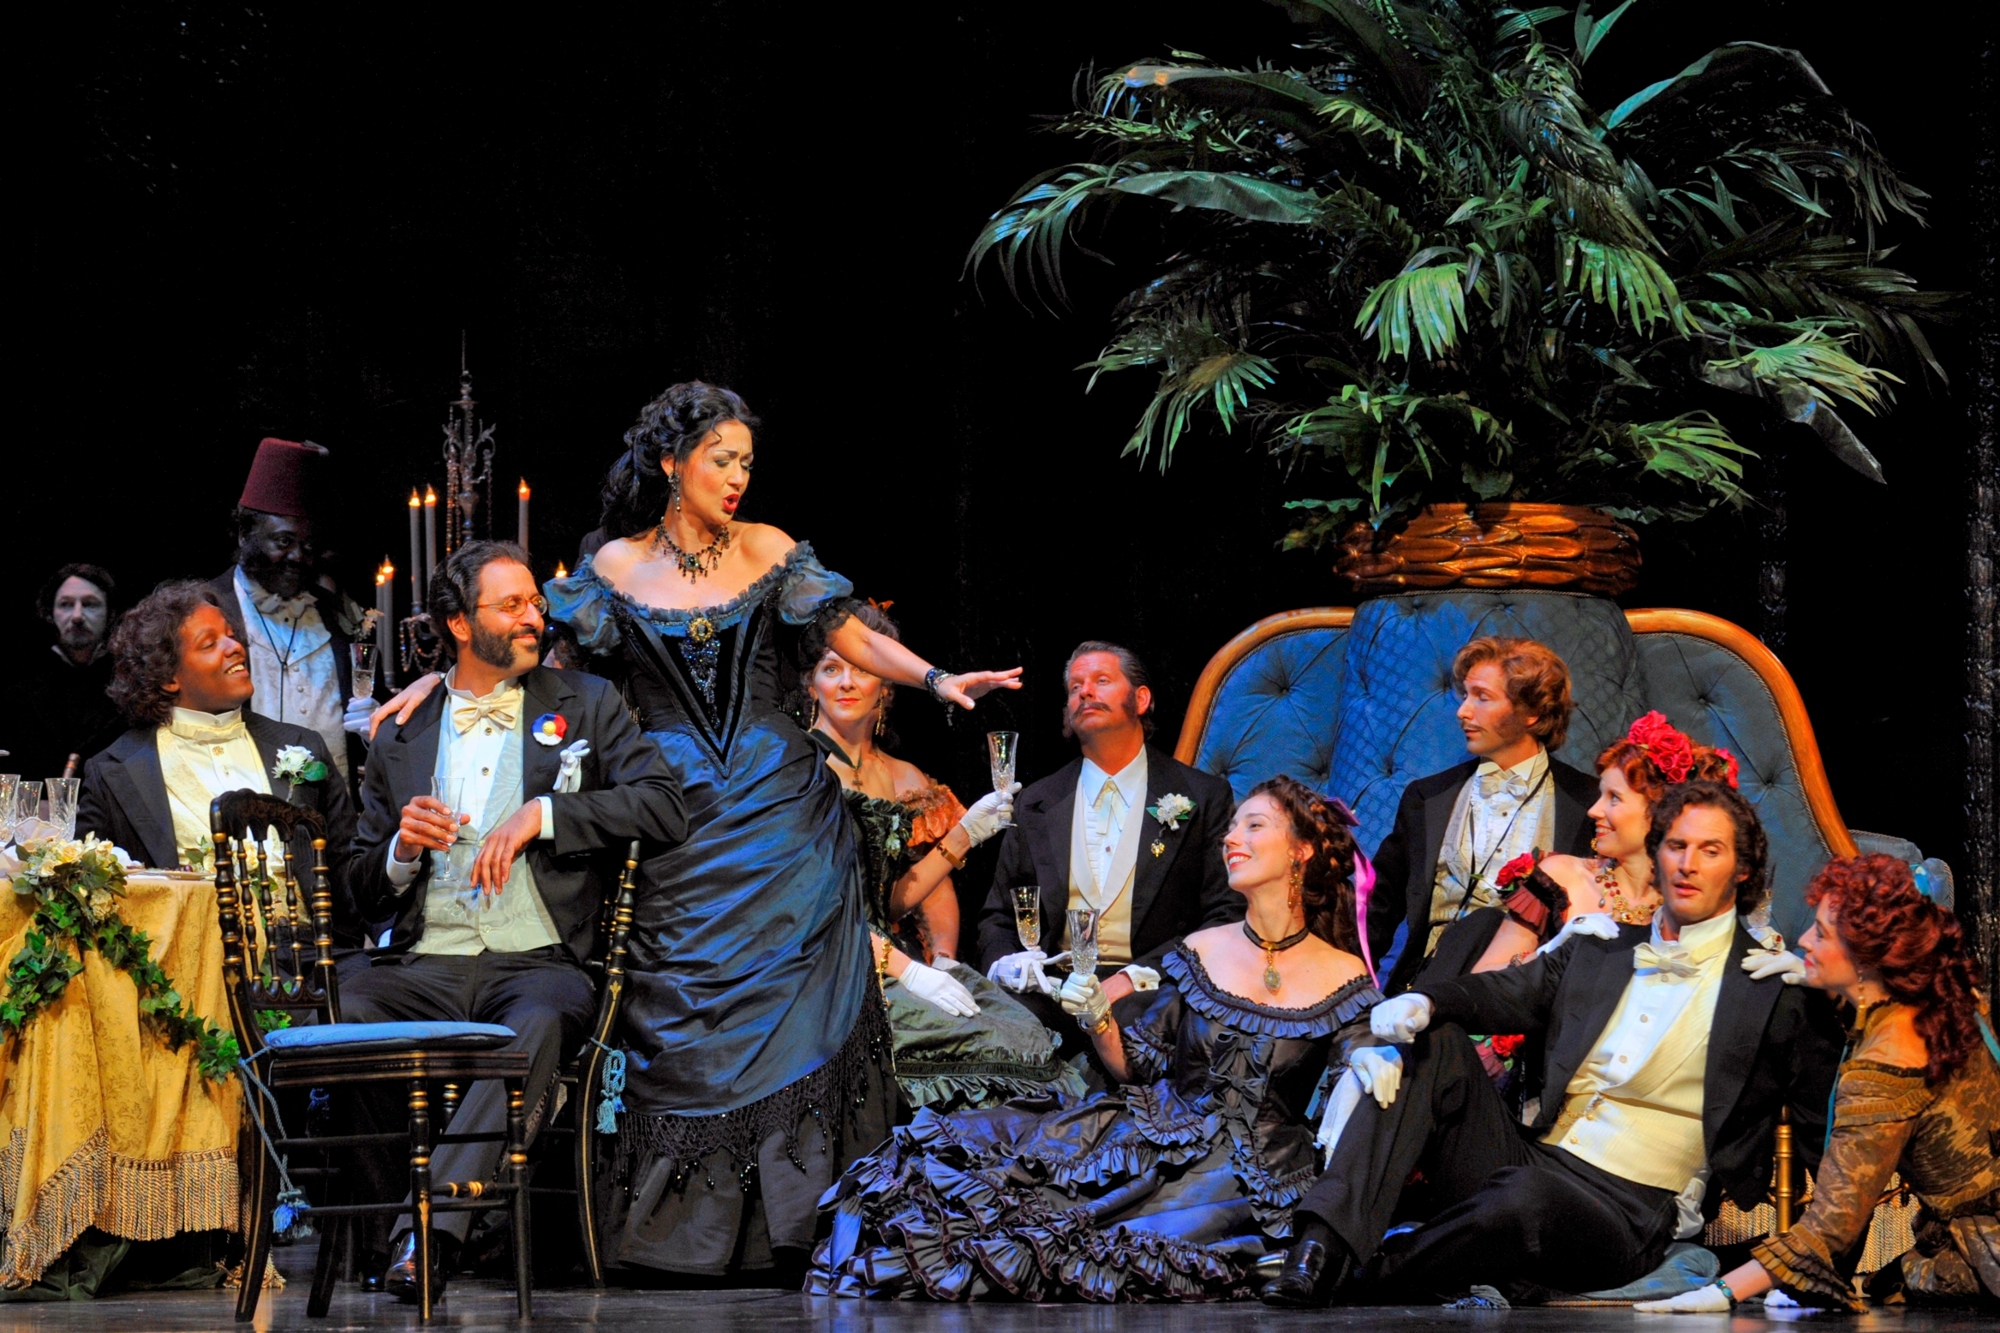 La Traviata | Opera Review by Sherri Tilley | The Dallas Opera